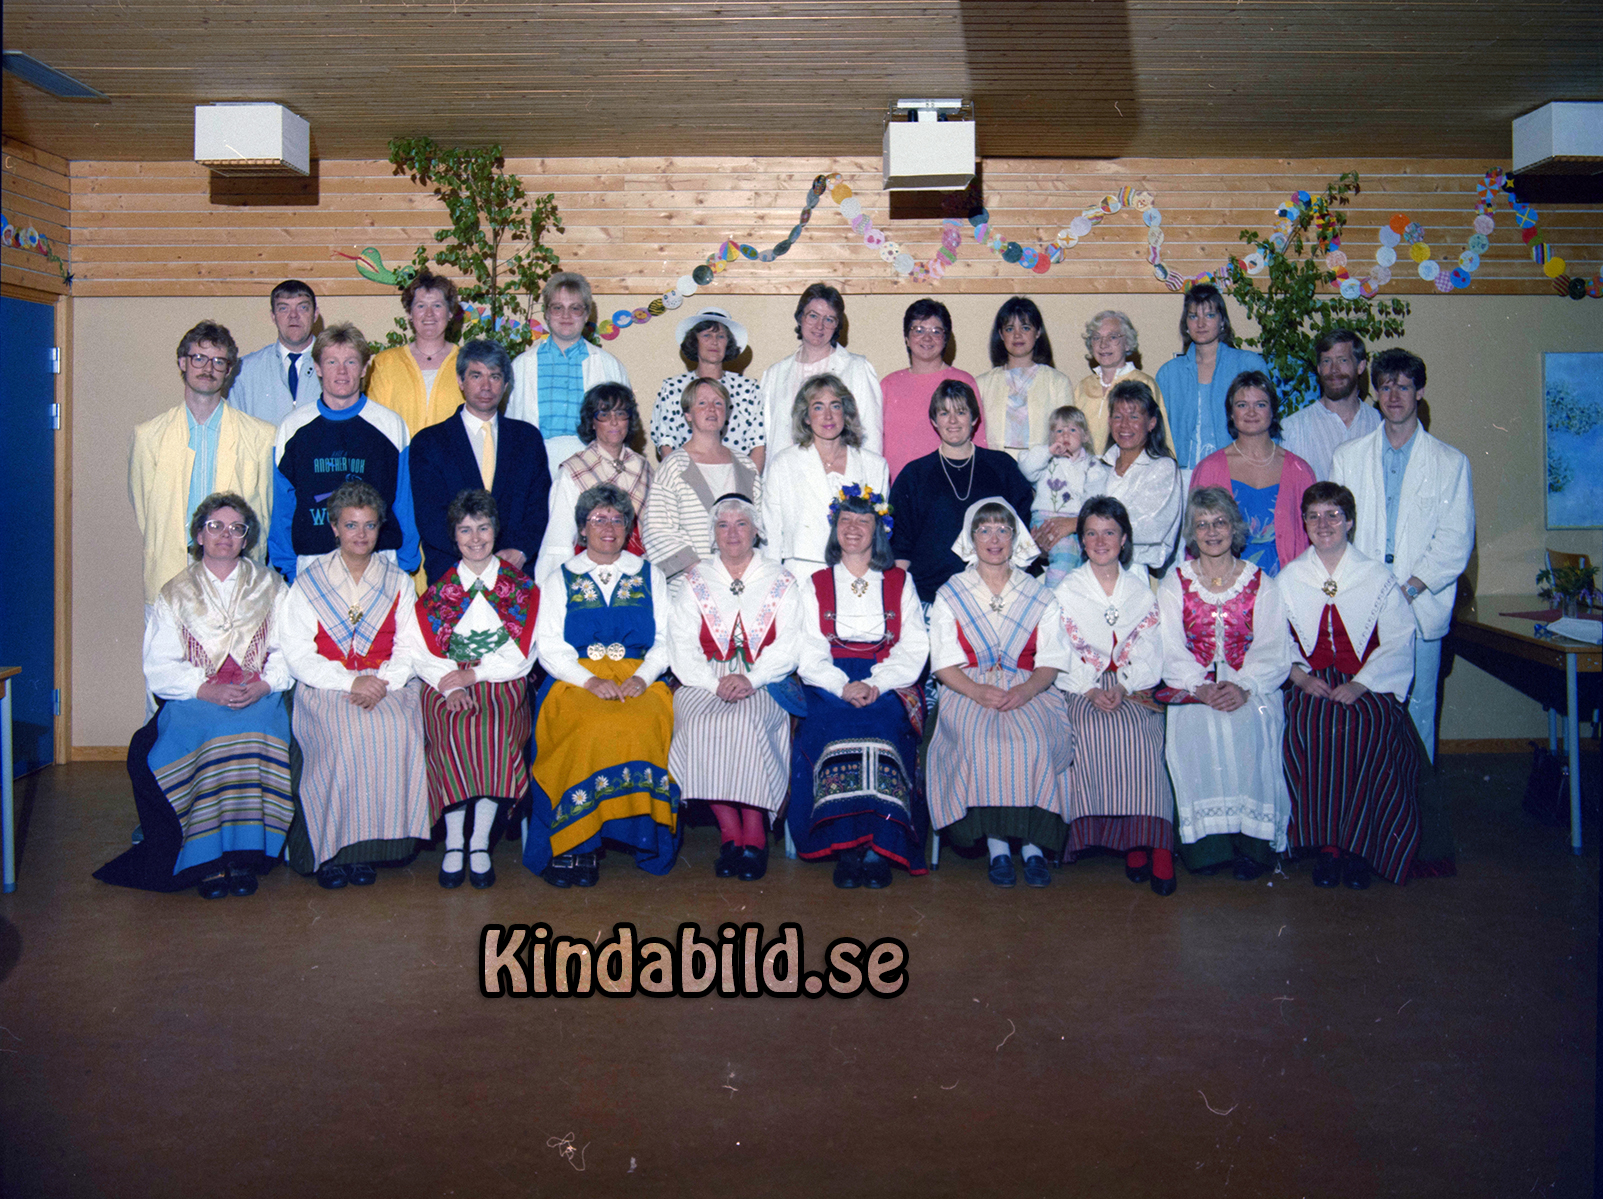 Bäckskolan Kisa
raja
Lärarkåren
Nyckelord: Bäckskolan Kisa